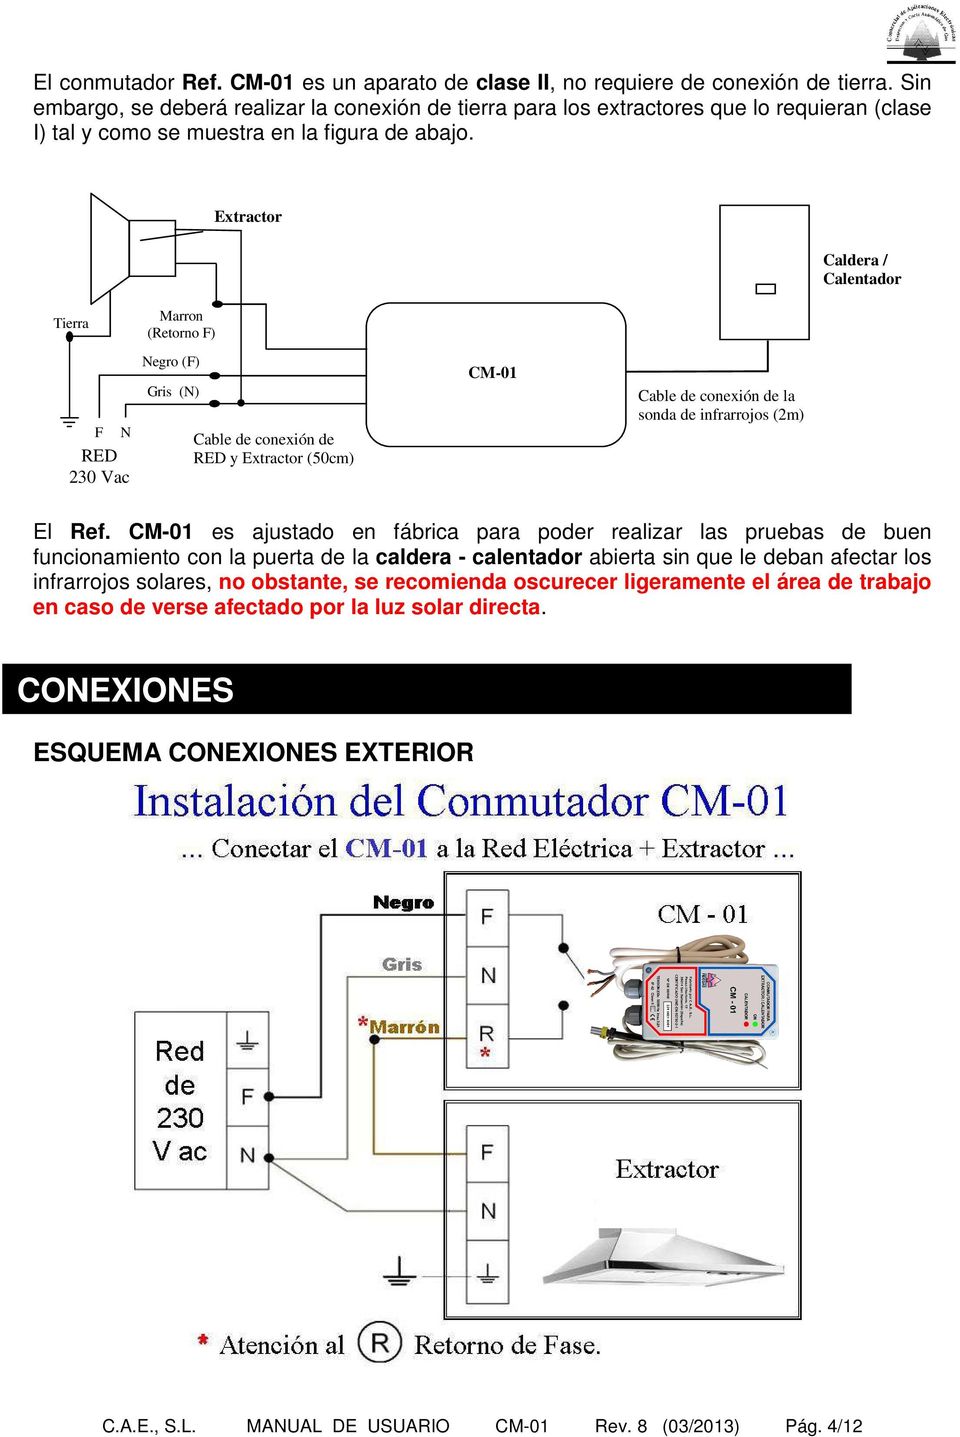 Extractor Caldera / Calentador Tierra Marron (Retorno F) F N RED 230 Vac Negro (F) Gris (N) Cable de conexión de RED y Extractor (50cm) CM-01 Cable de conexión de la sonda de infrarrojos (2m) El Ref.